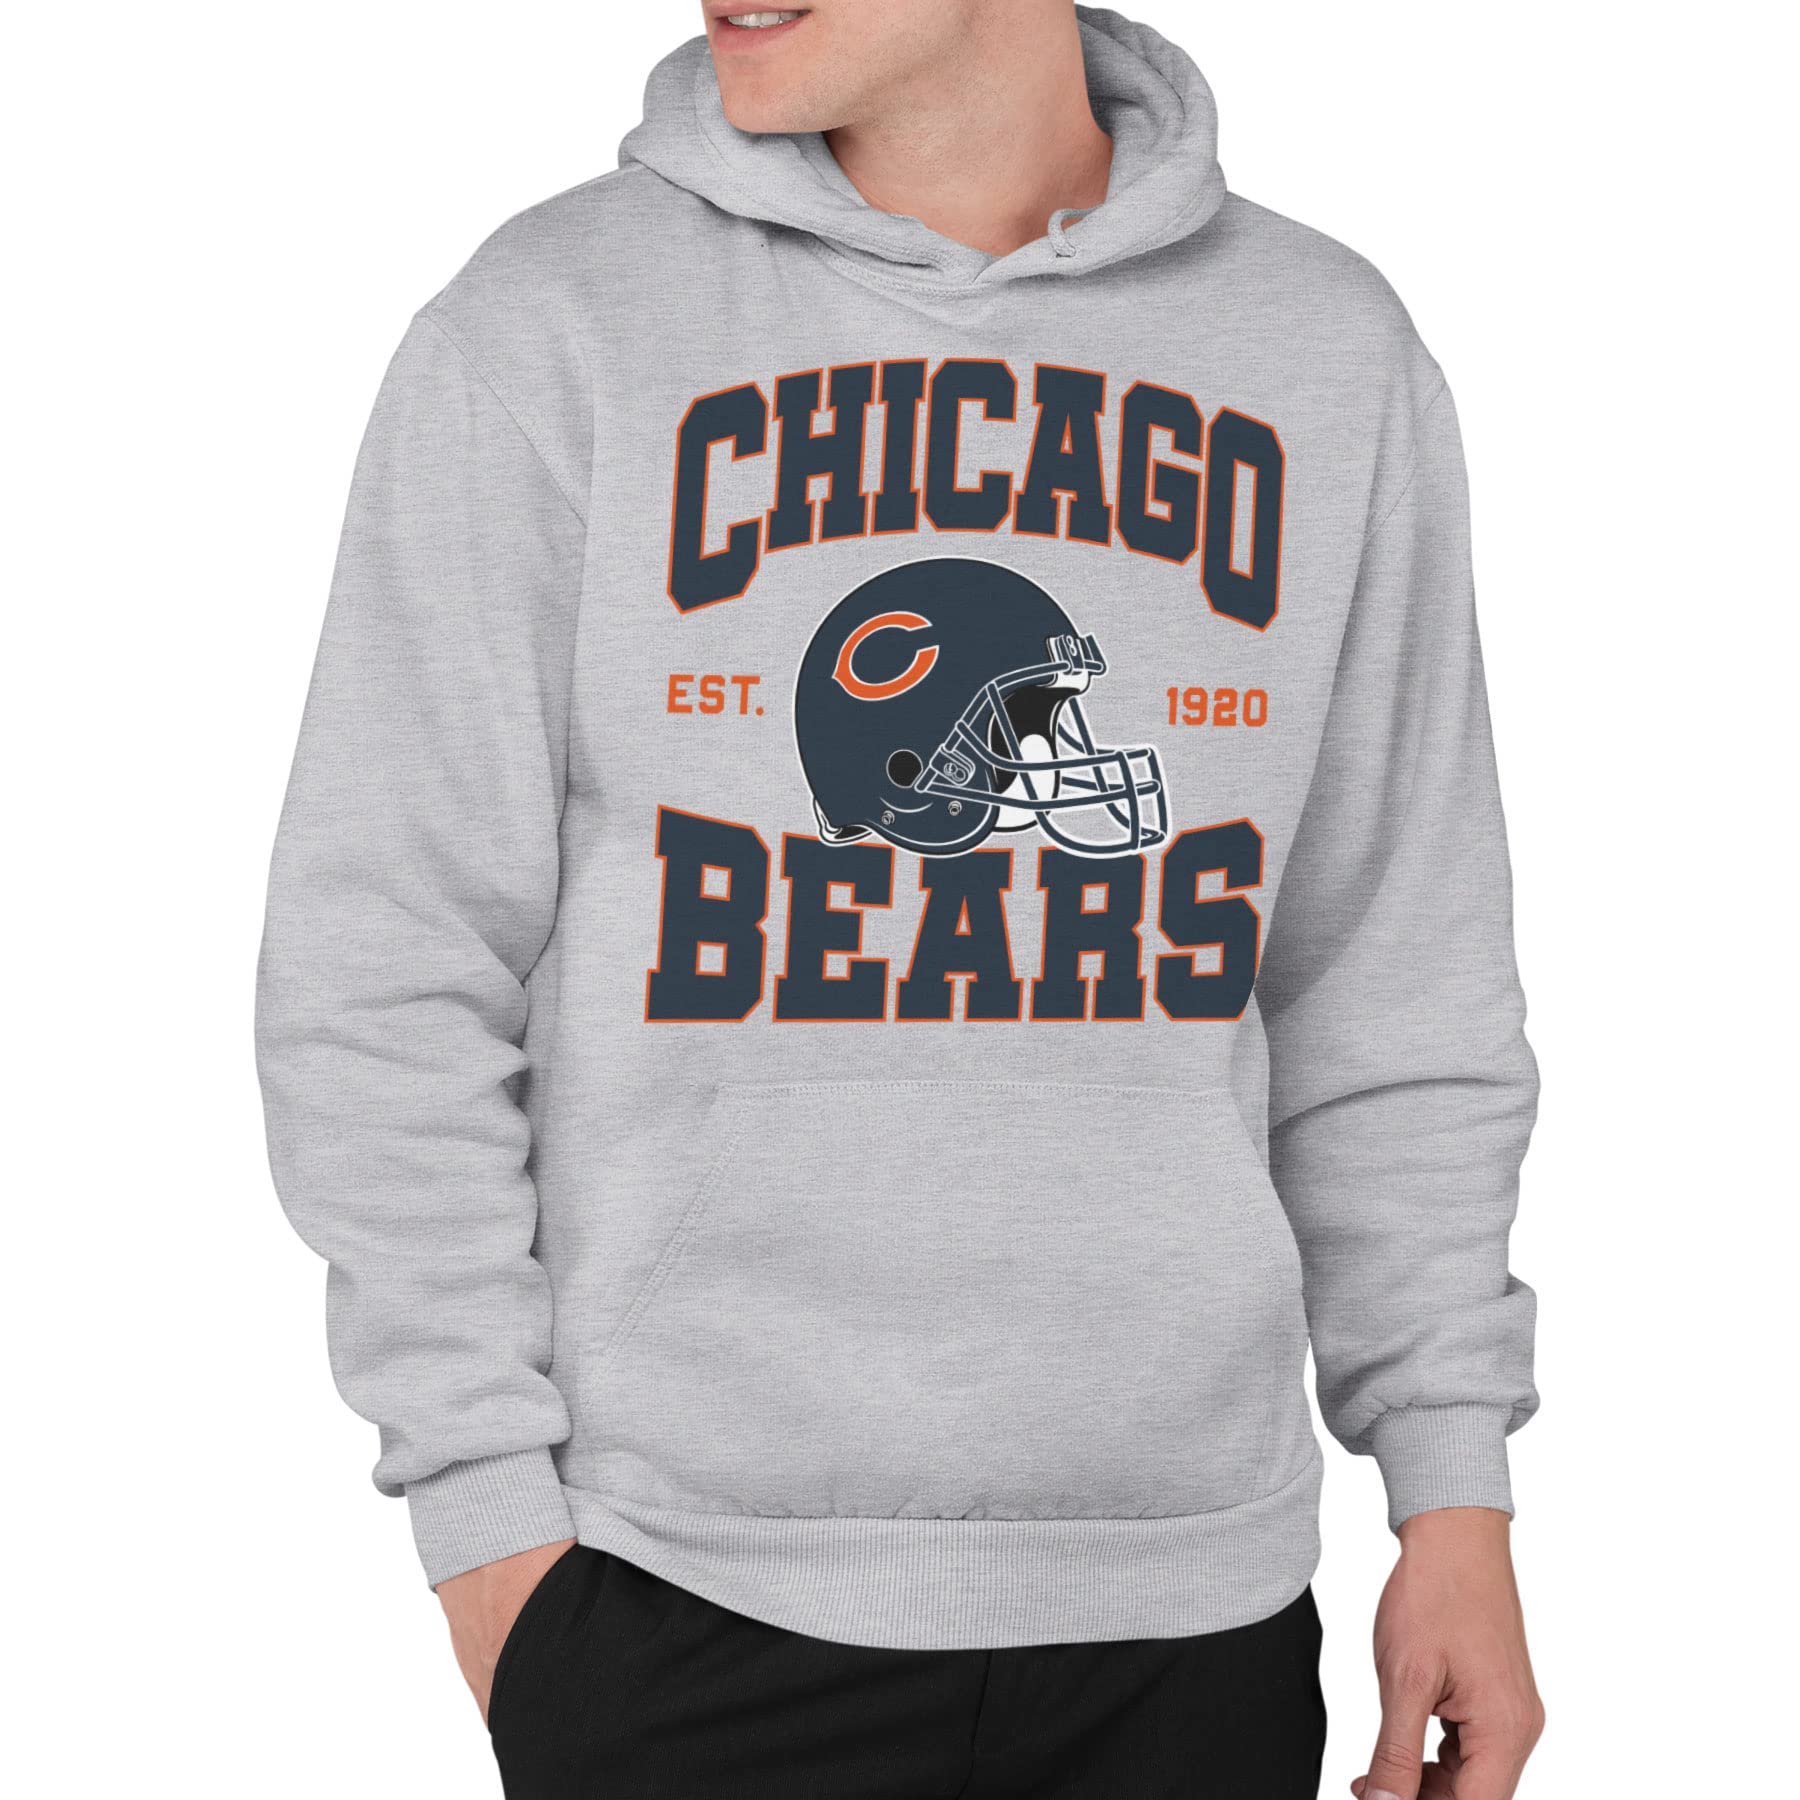 chicago bears hoodie grey